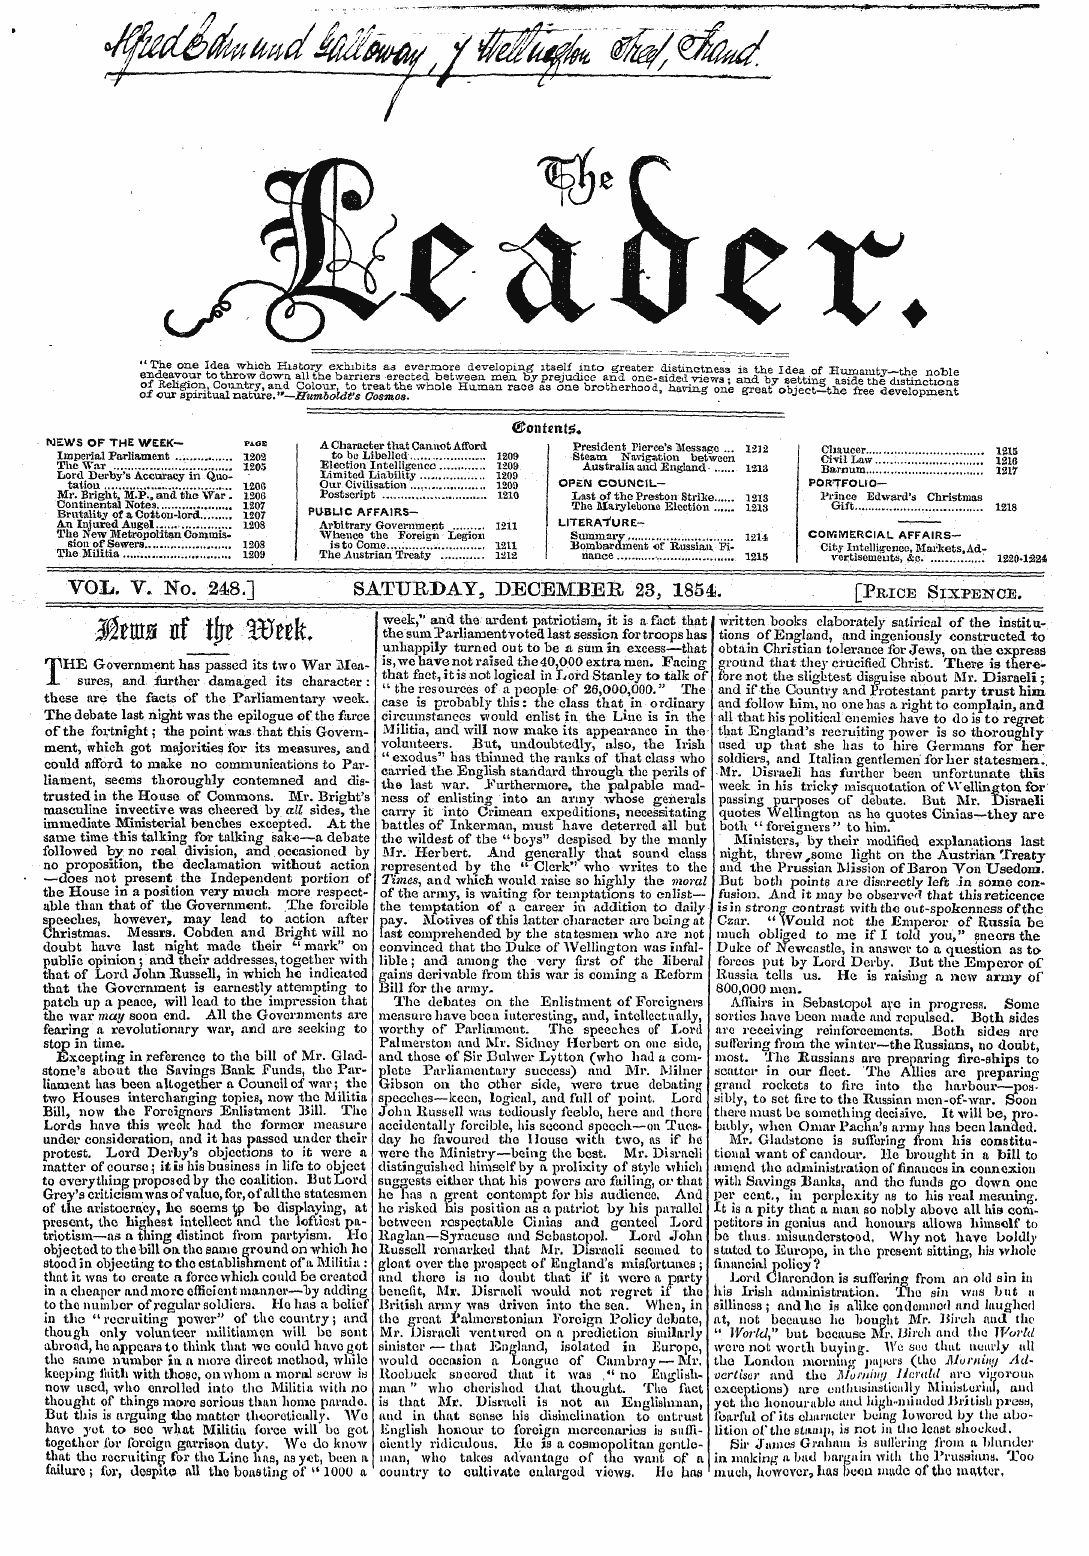 Leader (1850-1860): jS F Y, 2nd edition - Otantcnt*.